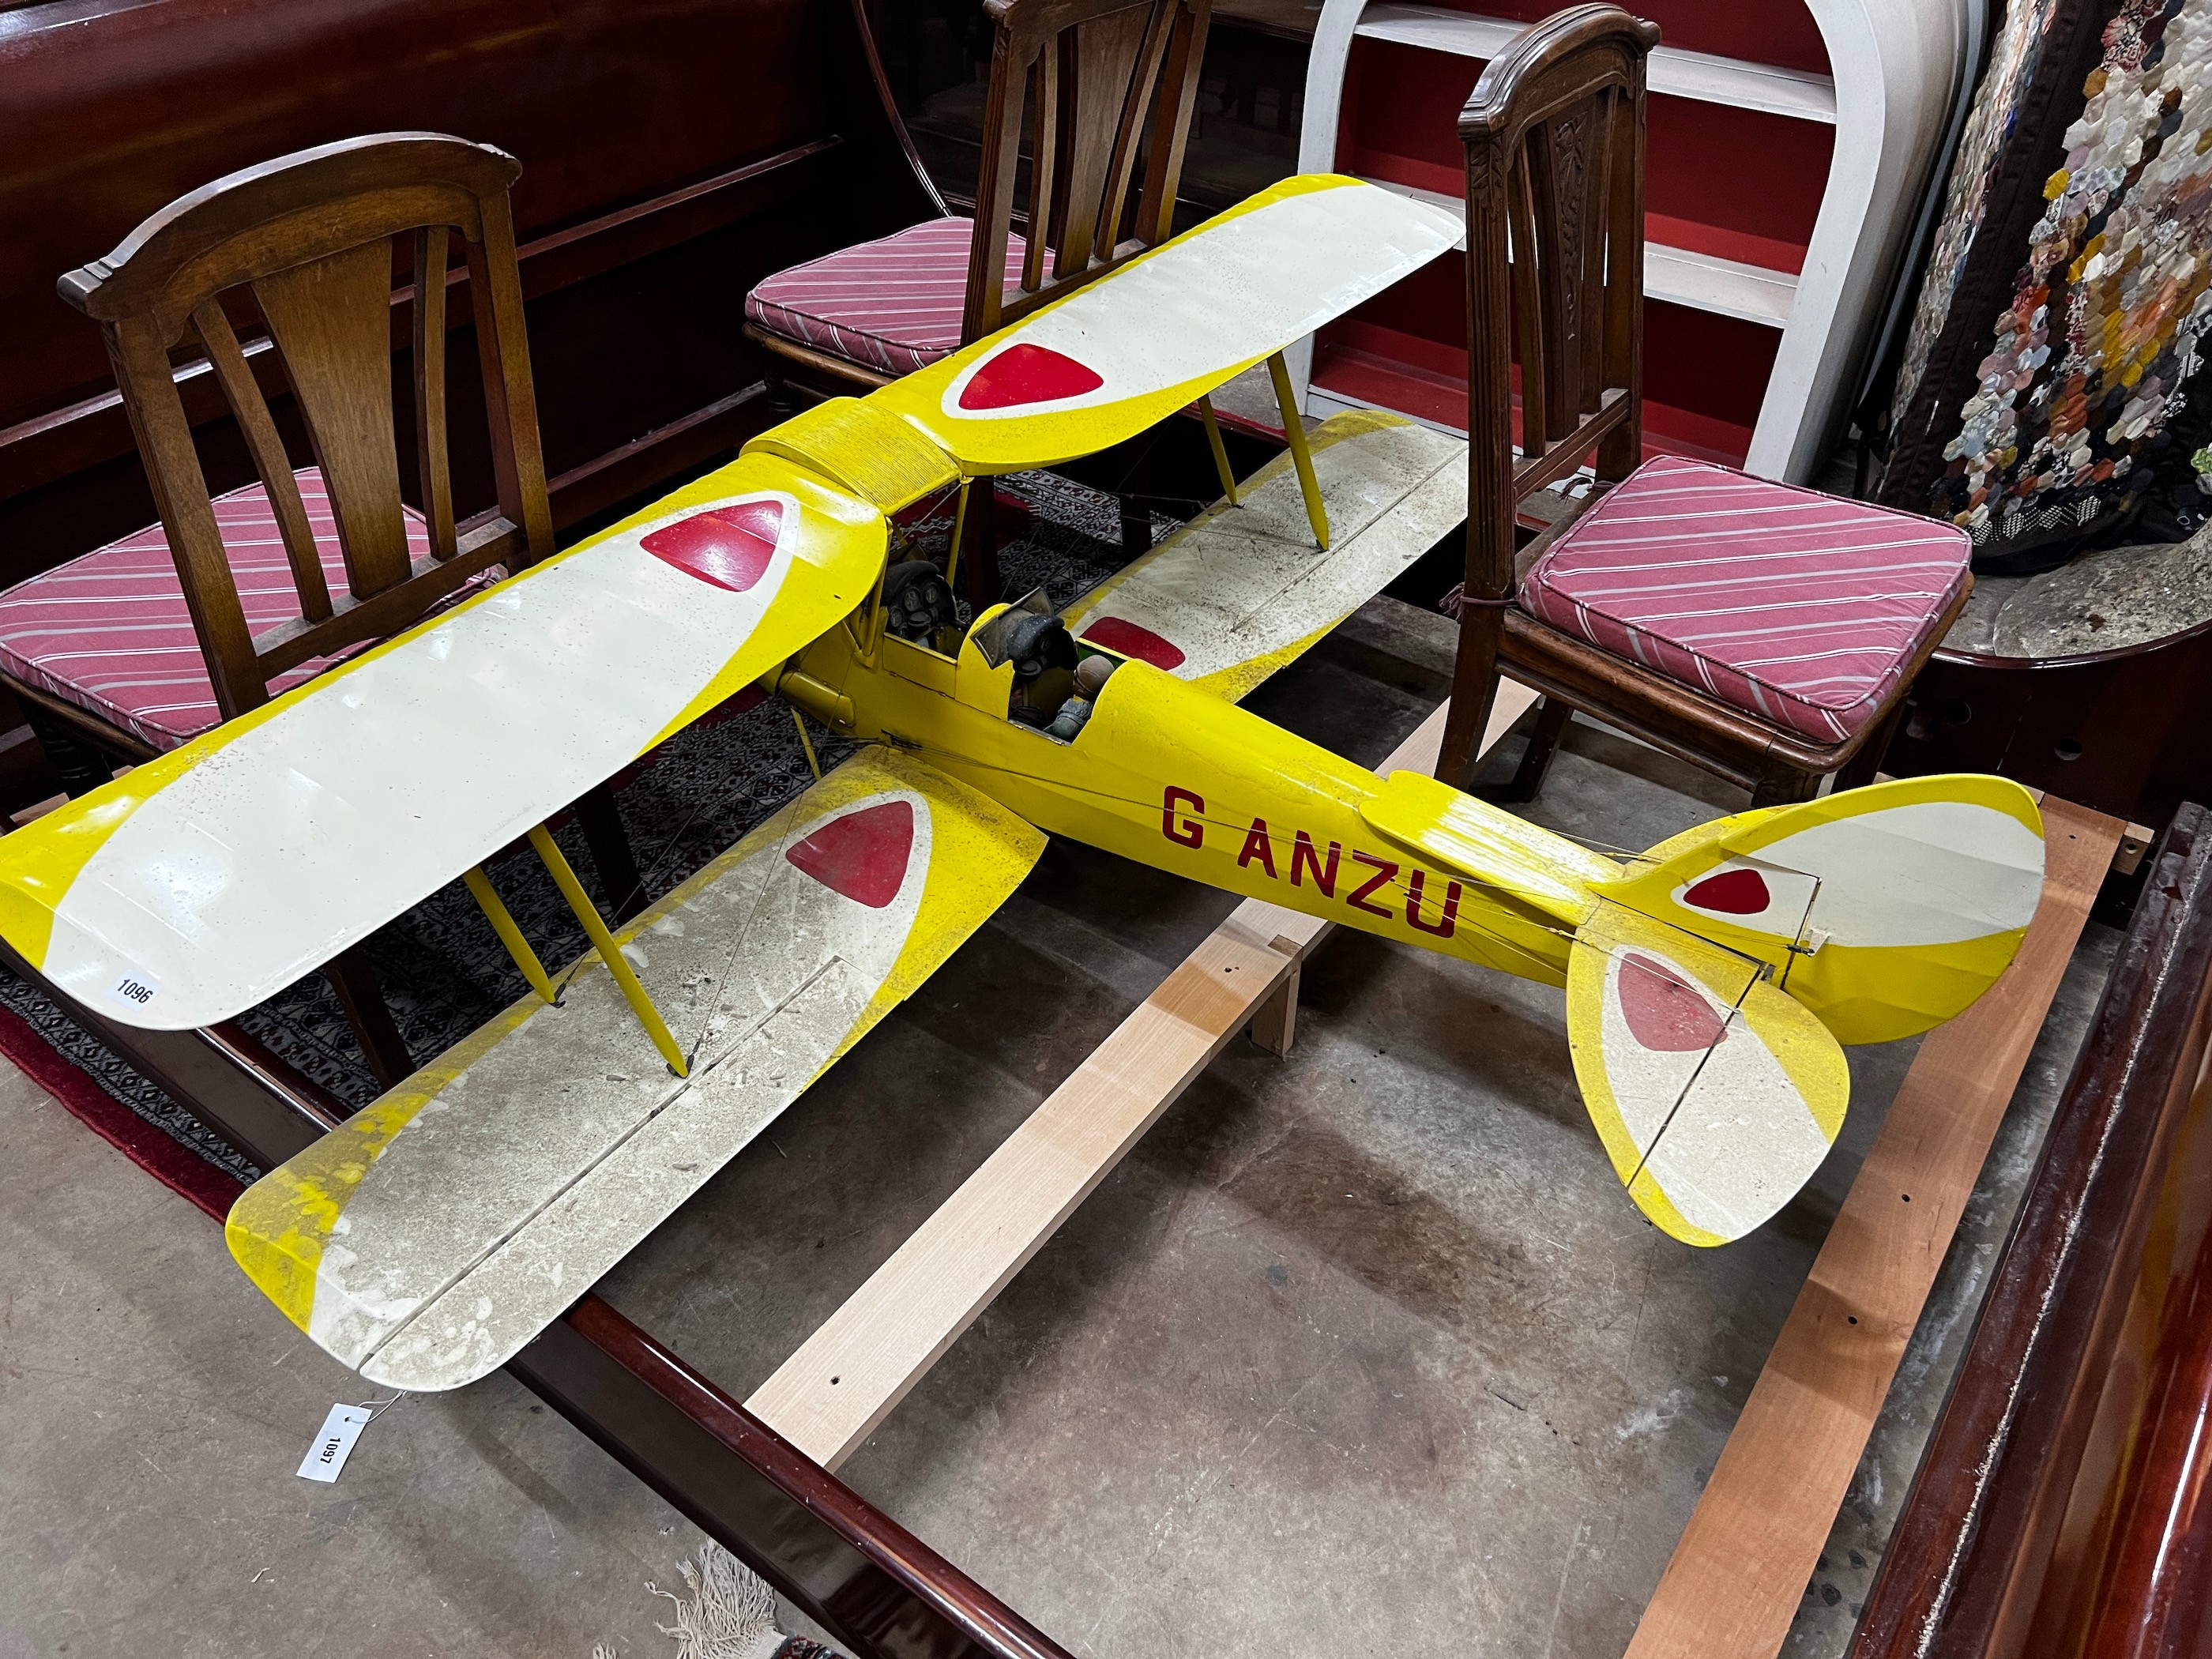 A De Havilland Tiger Moth Reg:- G-ANZU model aeroplane, width 183cm, length 150cm *Please note the sale commences at 9am.